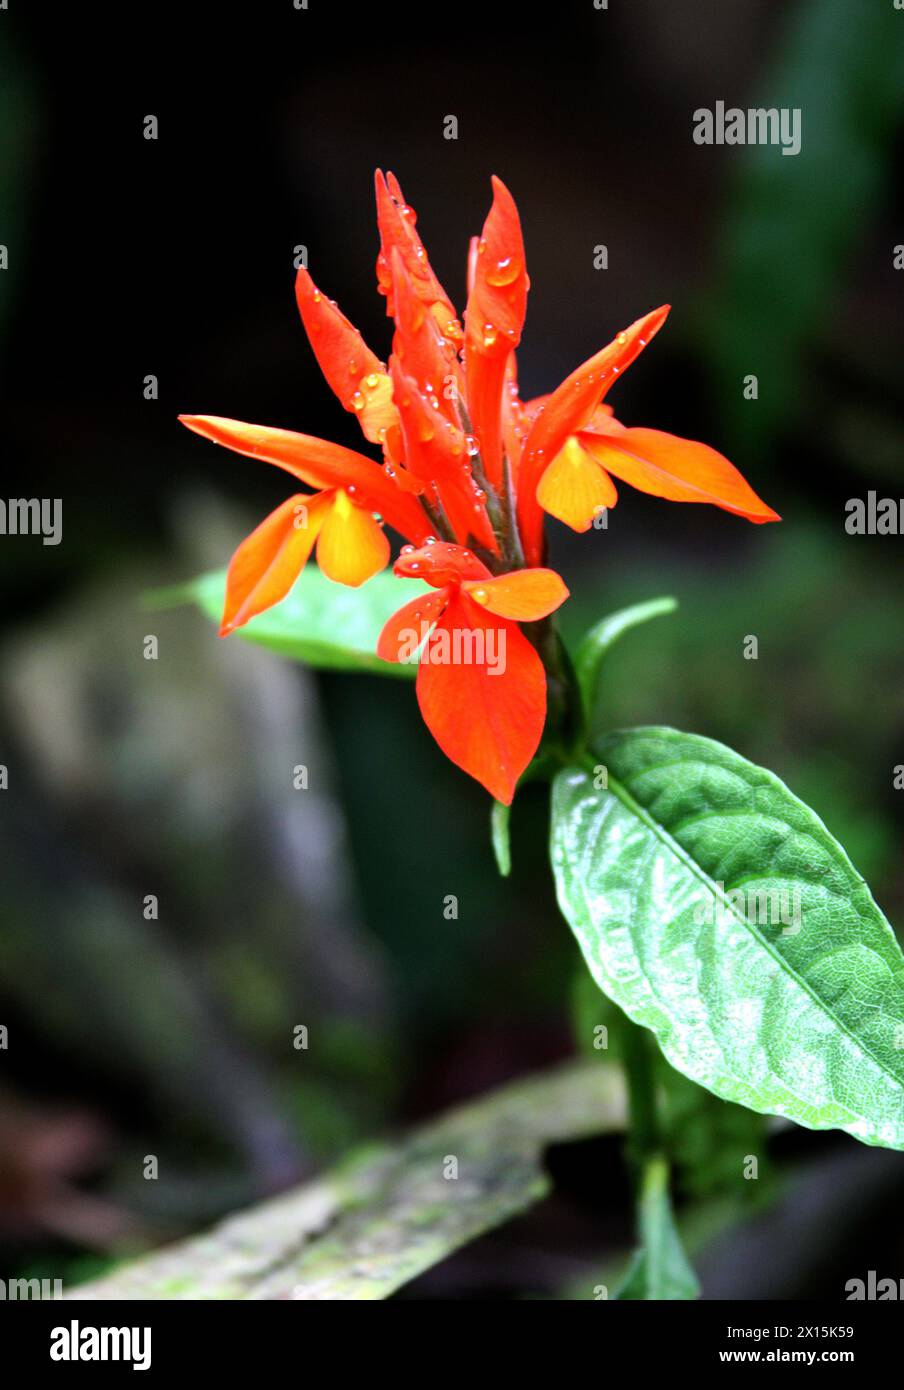 Feuriger Spike, Aphelandra aurantiaca, Acanthaceae. Dschungelpflanze mit Orangenblüte. Arenal, Costa Rica. Stockfoto